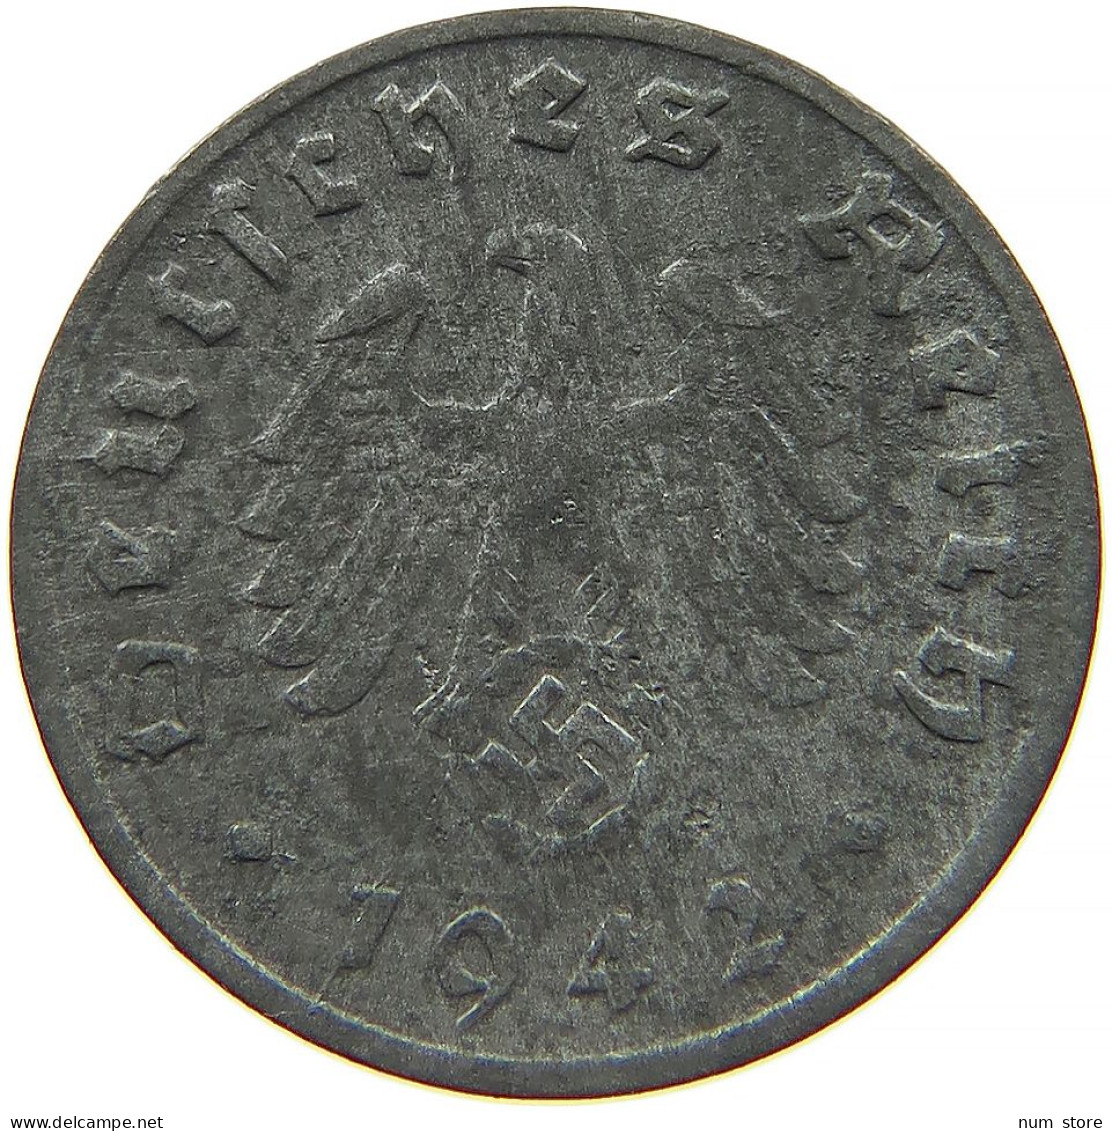 GERMANY 1 REICHSPFENNIG 1942 D #s091 1147 - 1 Reichspfennig